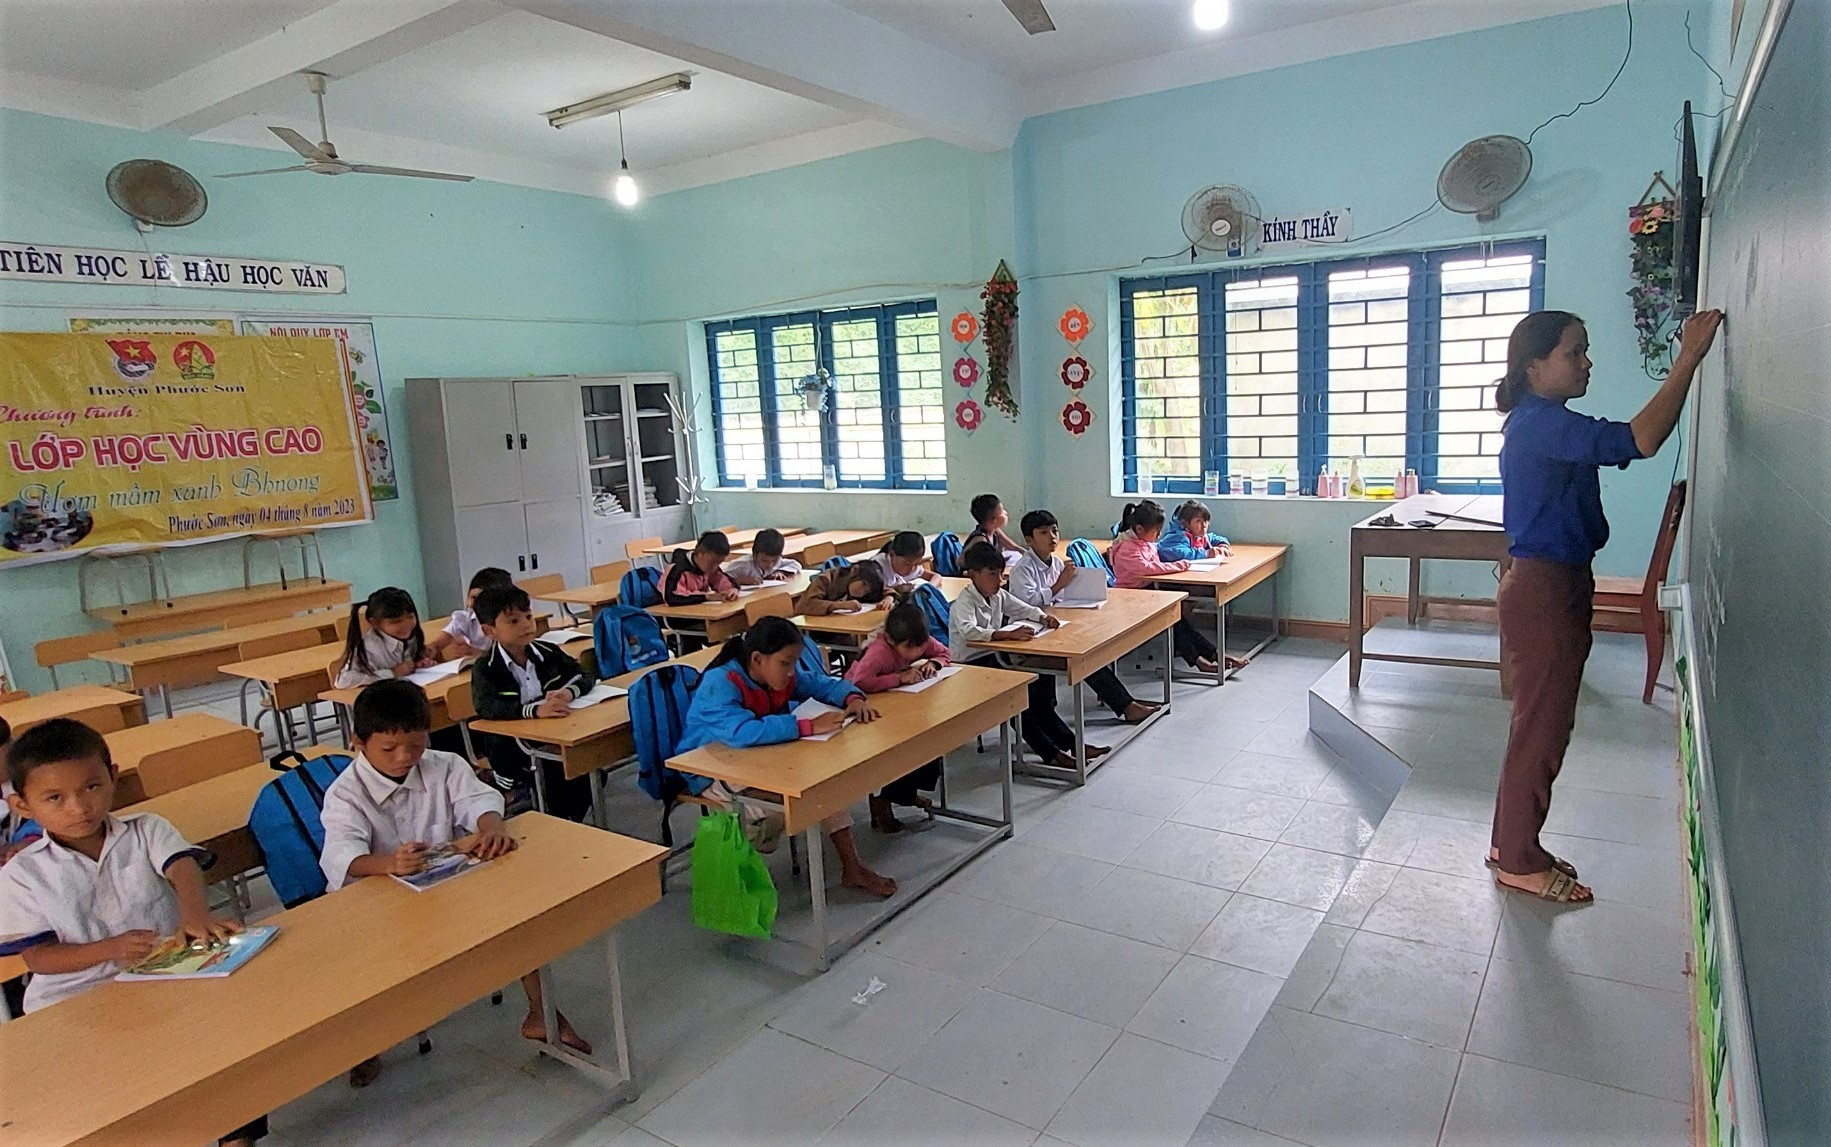 Lớp học vùng cao “Ươm mần xanh Bh'noong” được tổ chức tại xã Phước Kim. Ảnh: Đ.N